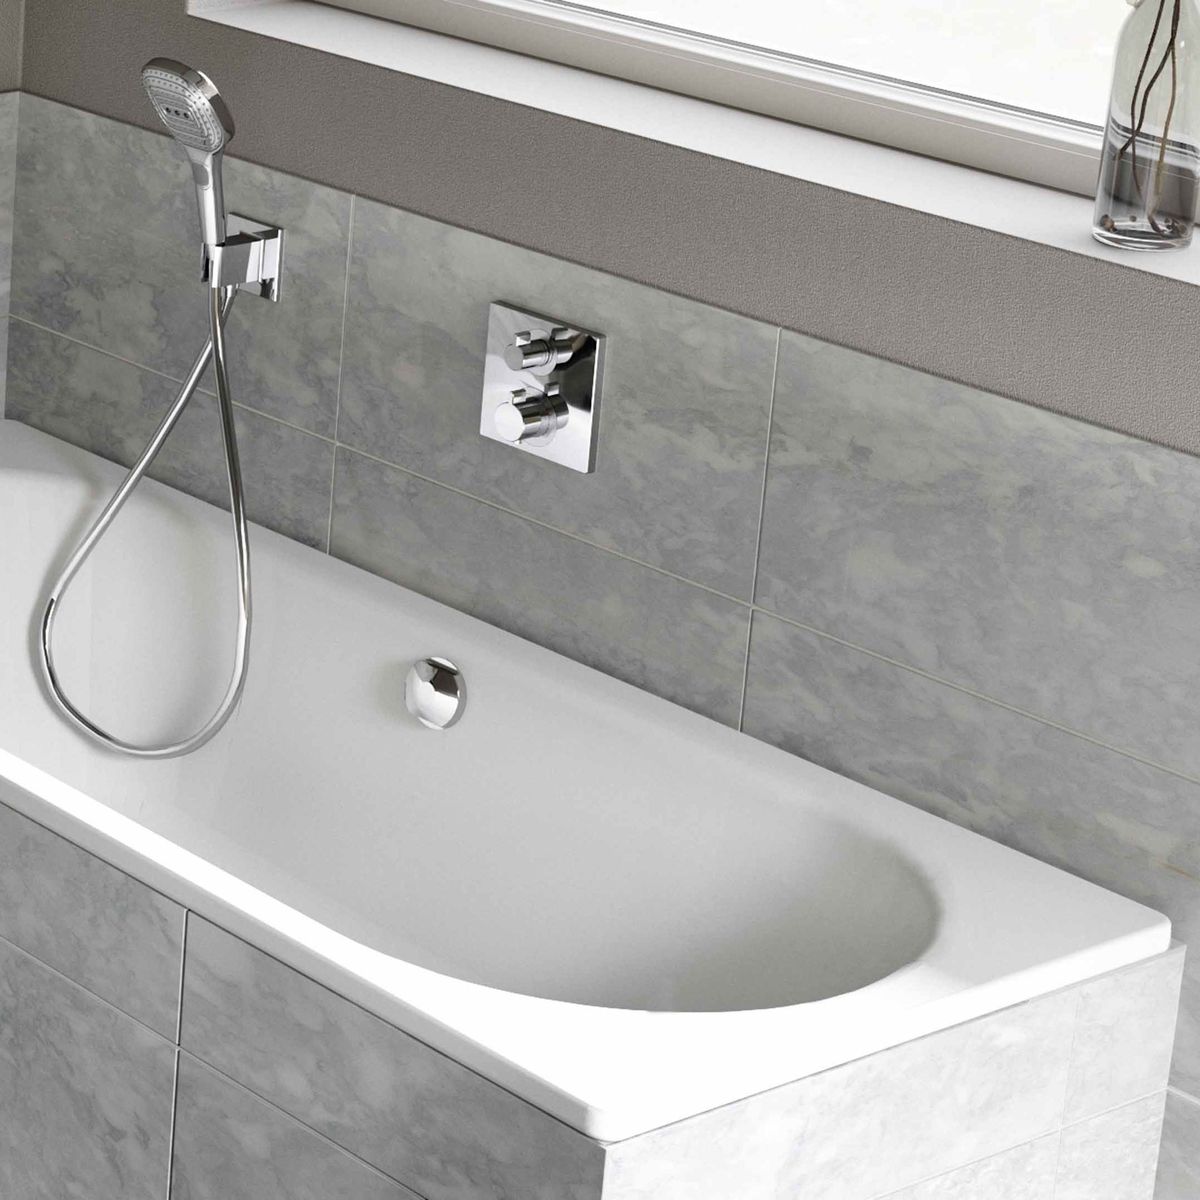 Plieninė vonia Kaldewei Classic Duo 180x75 cm, balta, 290900010001